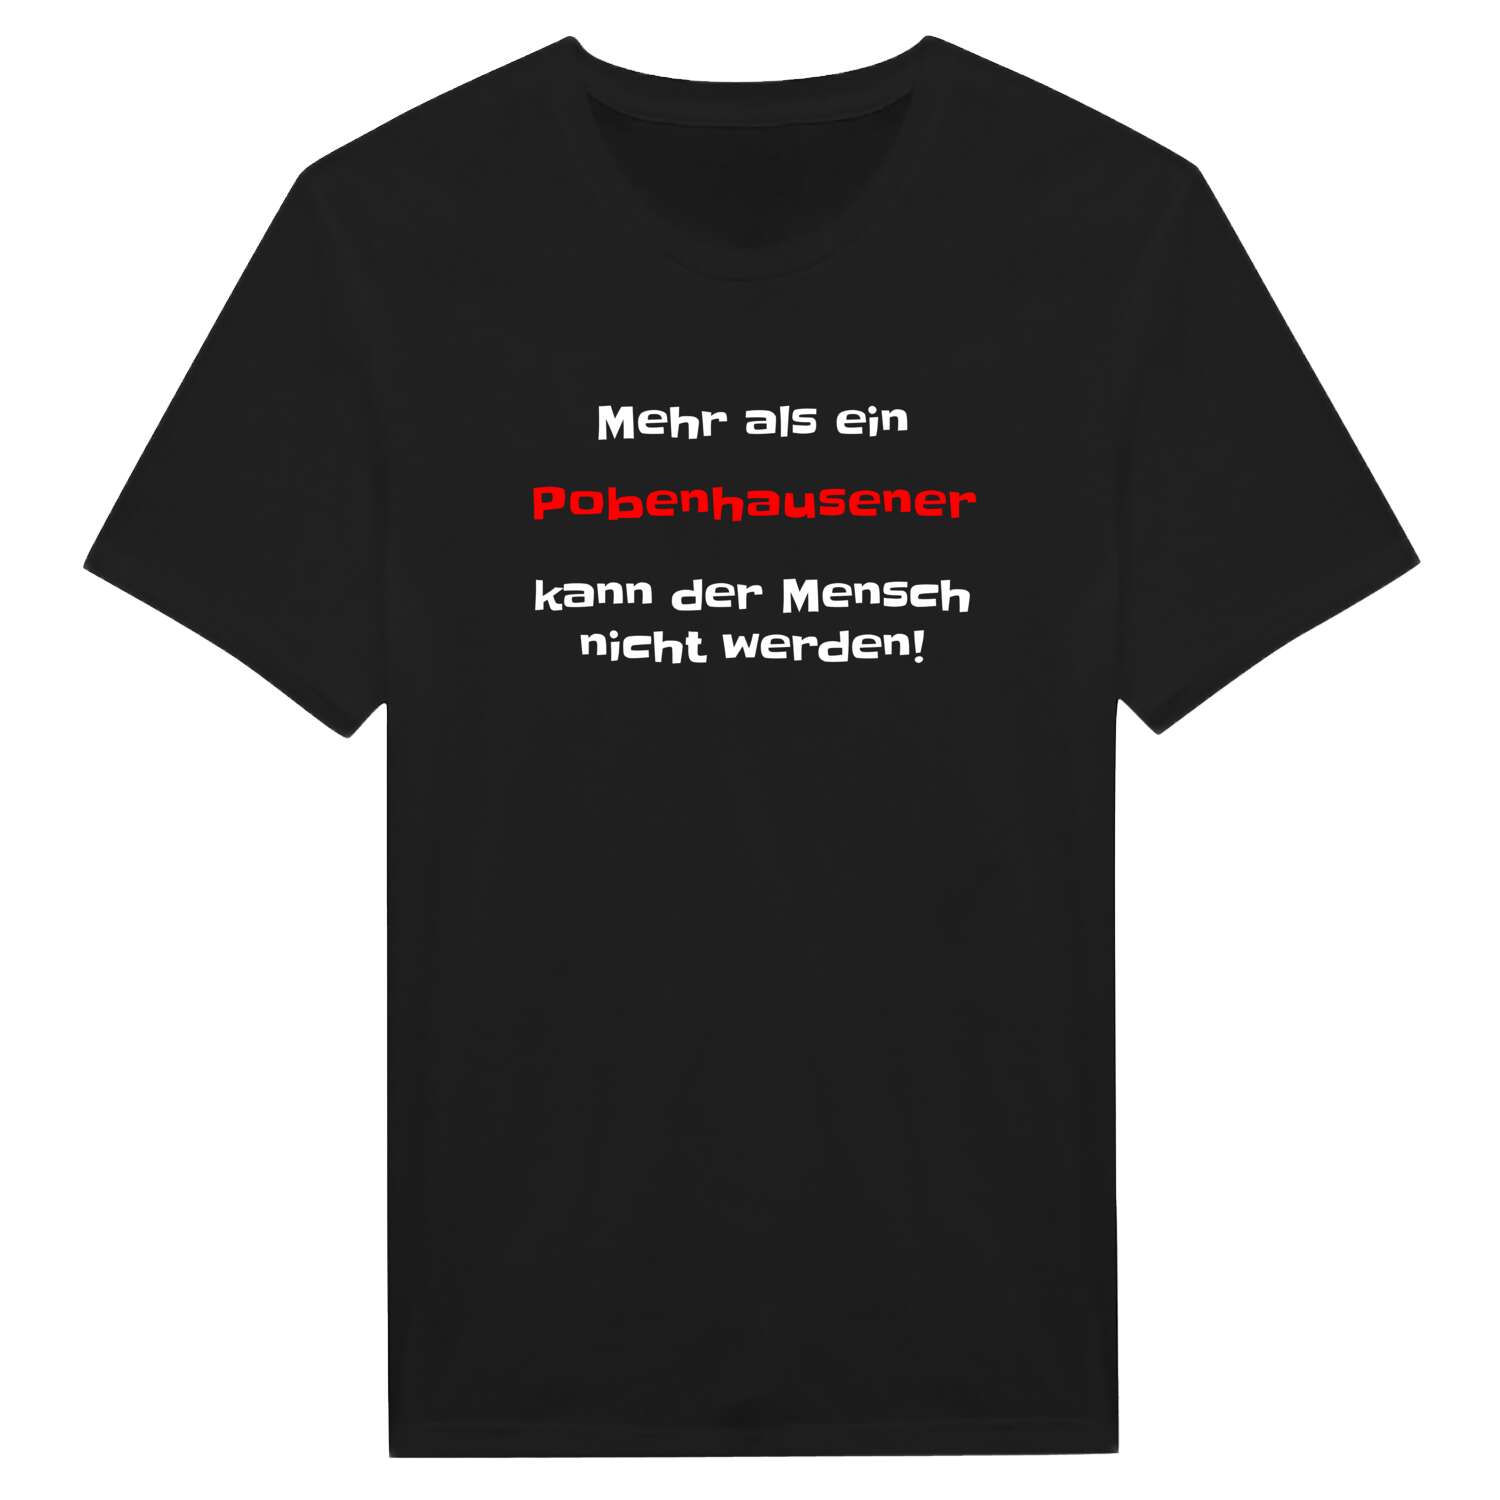 Pobenhausen T-Shirt »Mehr als ein«